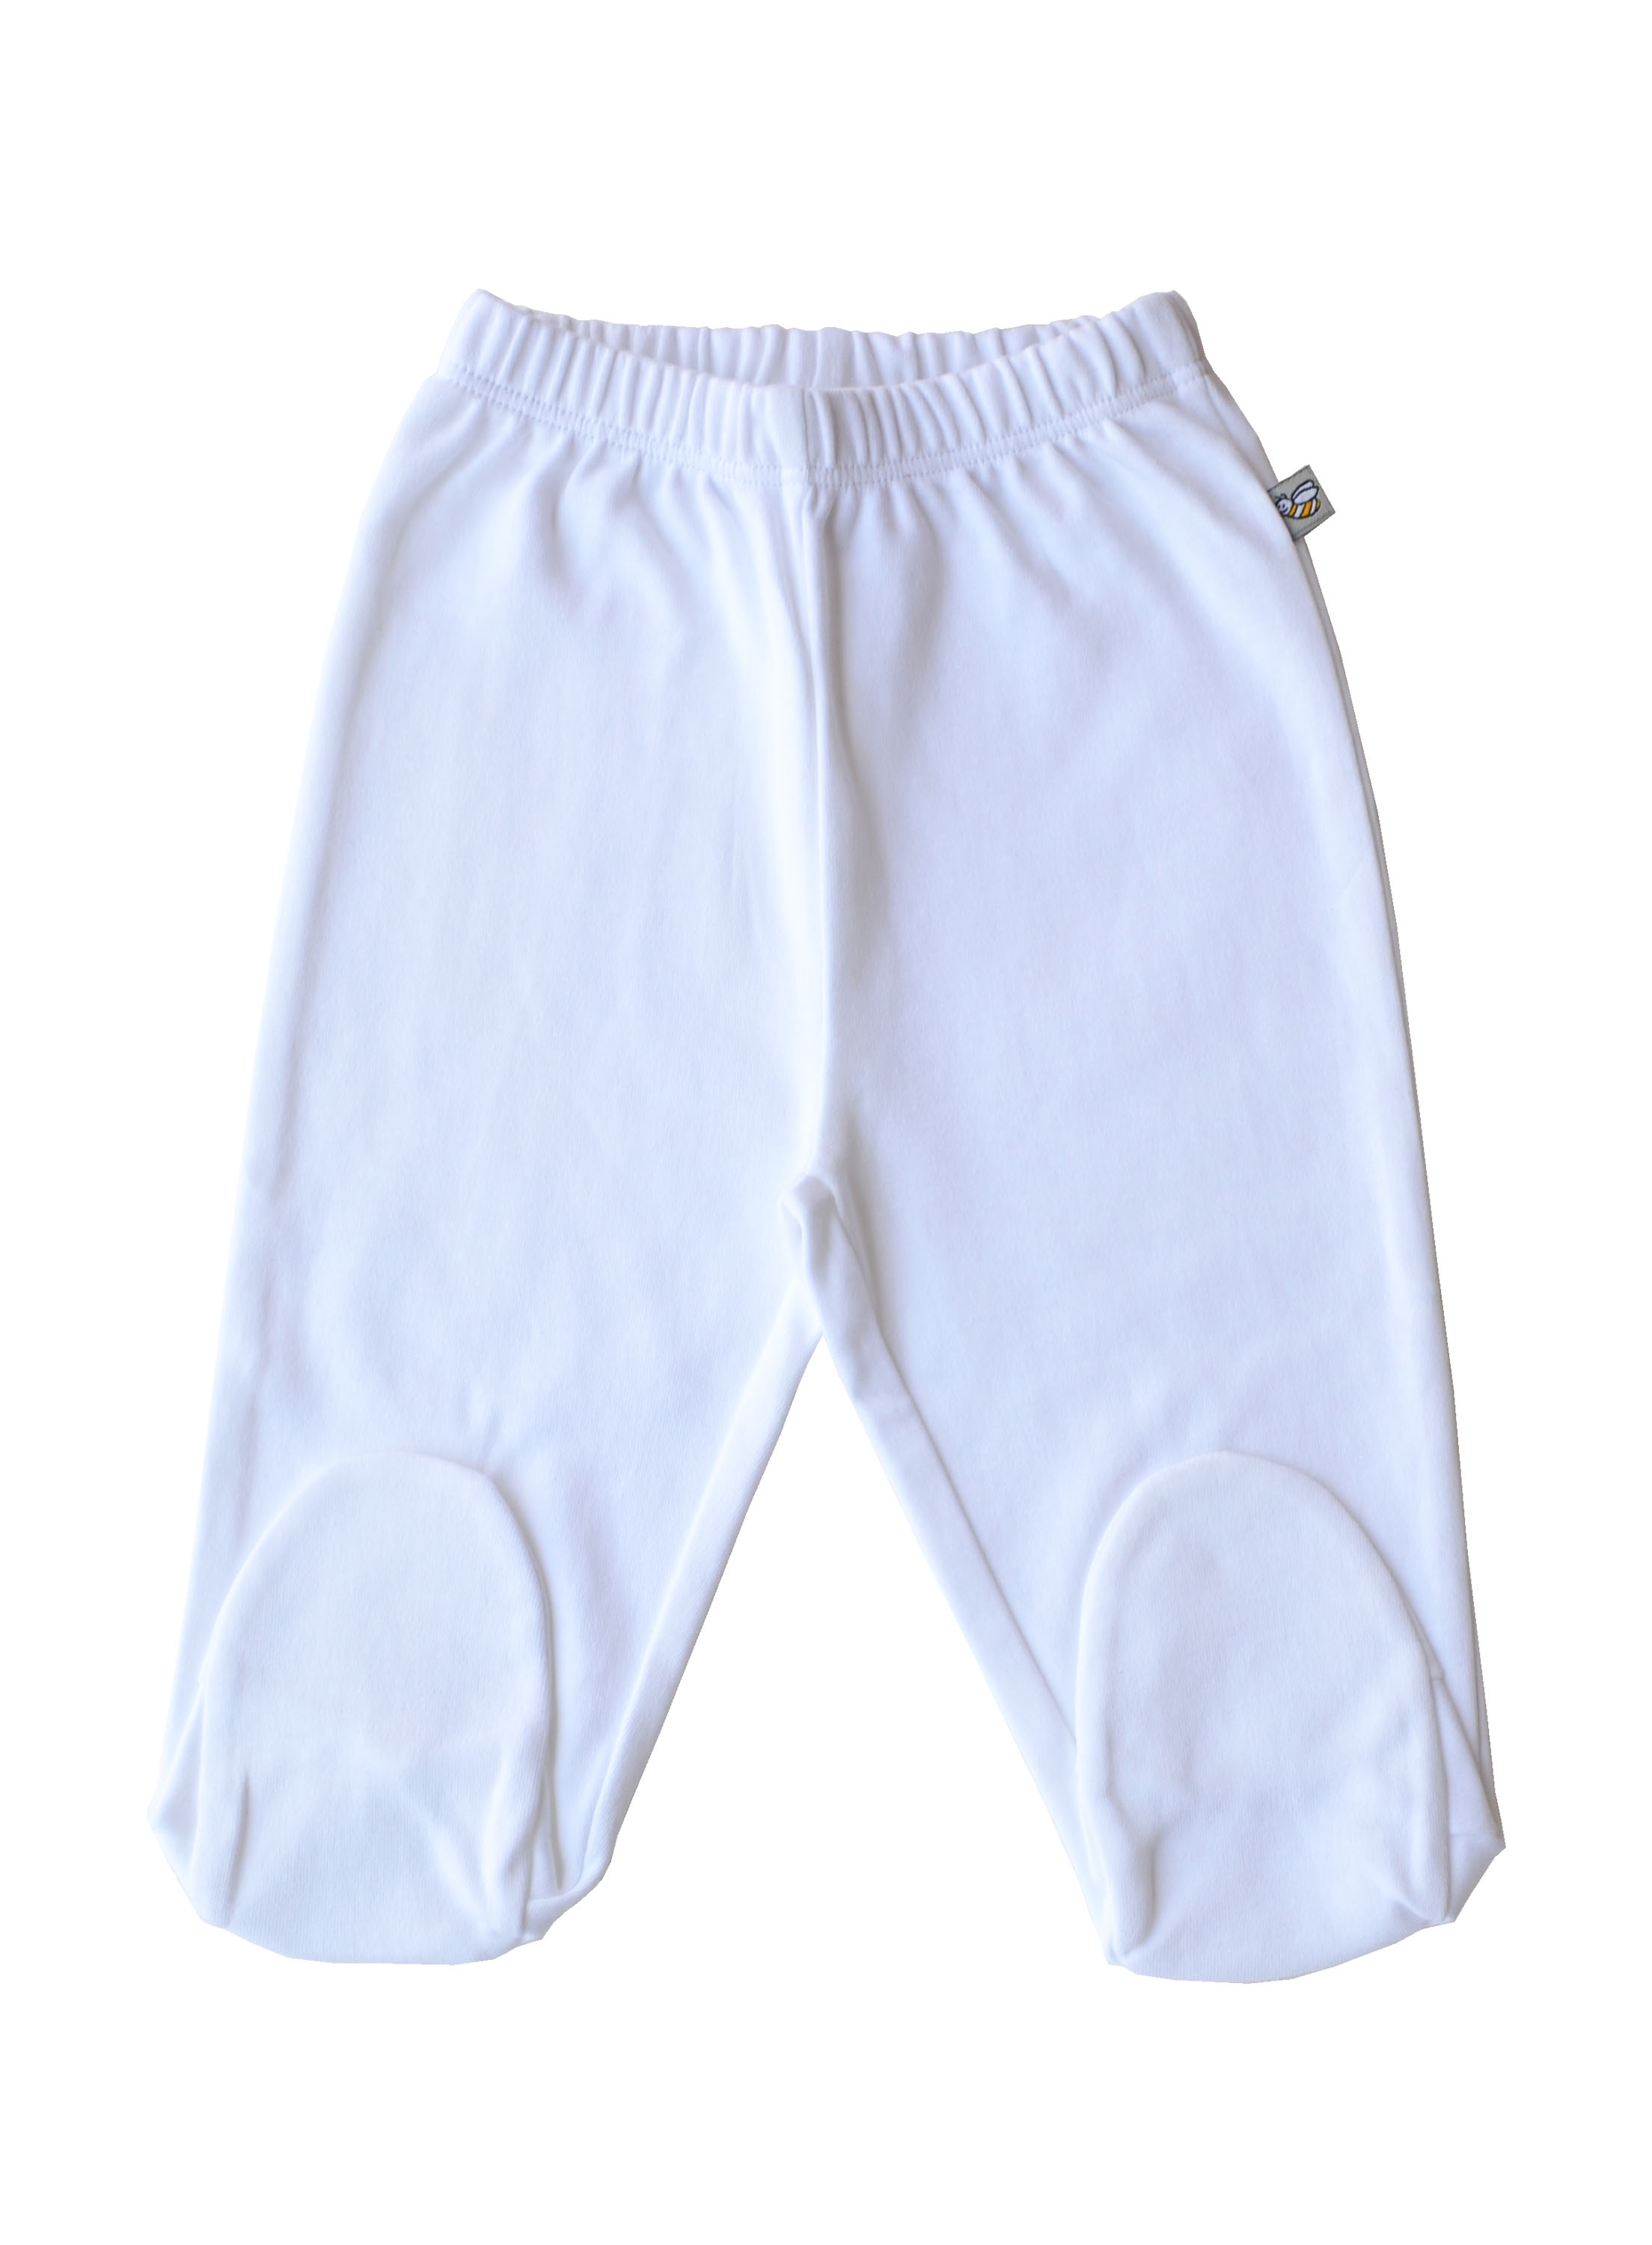 White Pant with Feet (100% Cotton Interlock Biowash)